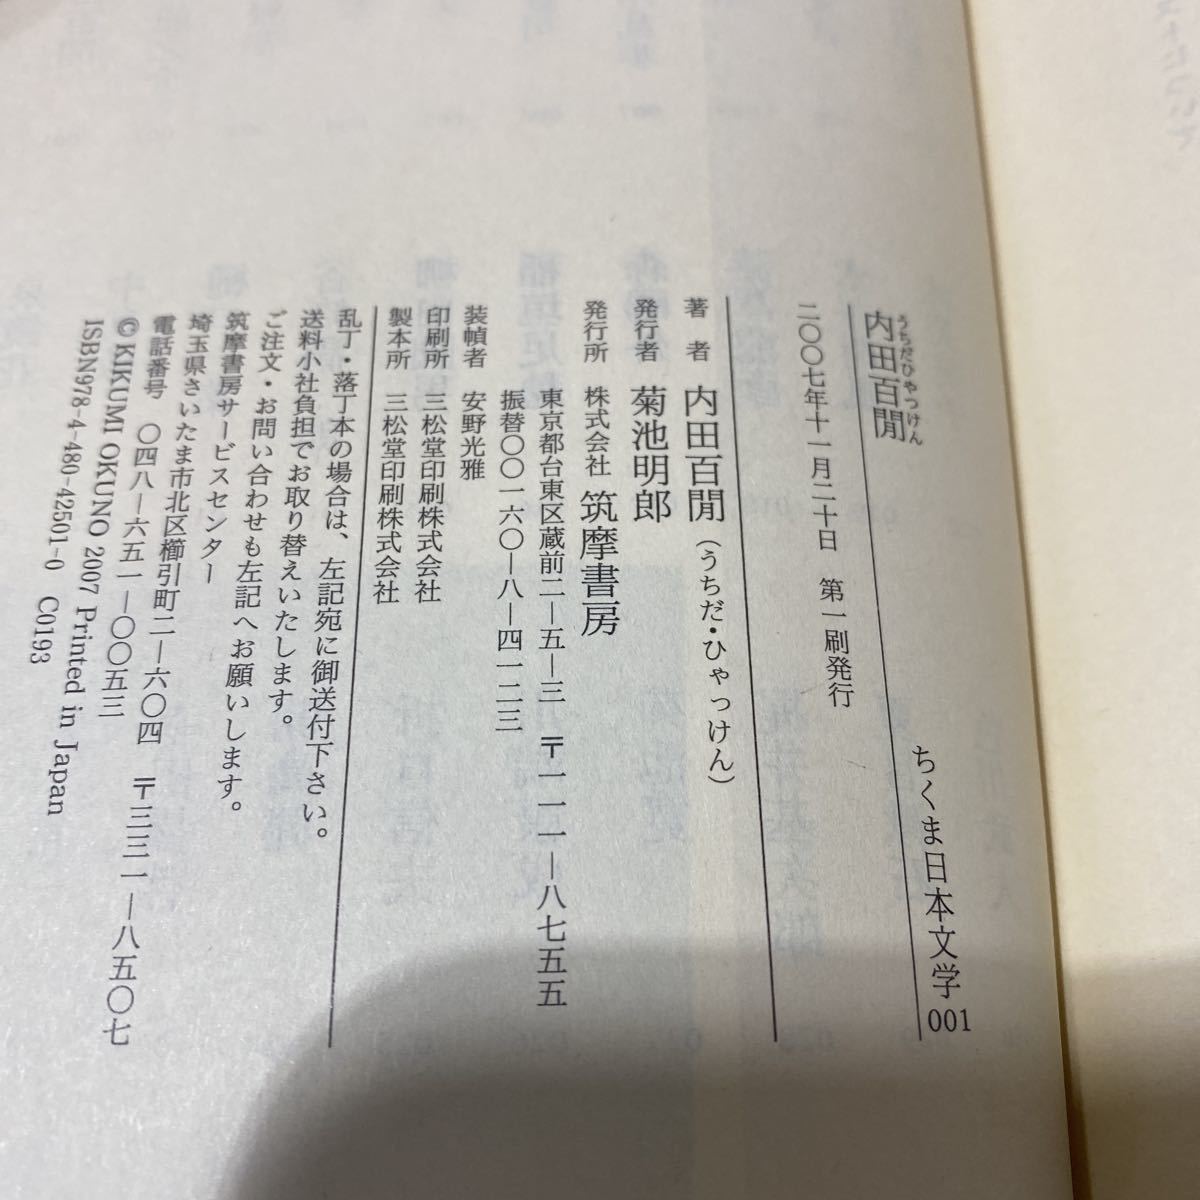  Chikuma day text .001*002*007 total 3 pcs. secondhand book inside rice field 100 .* Akutagawa Ryunosuke * Edogawa Ranpo library .. bookstore 